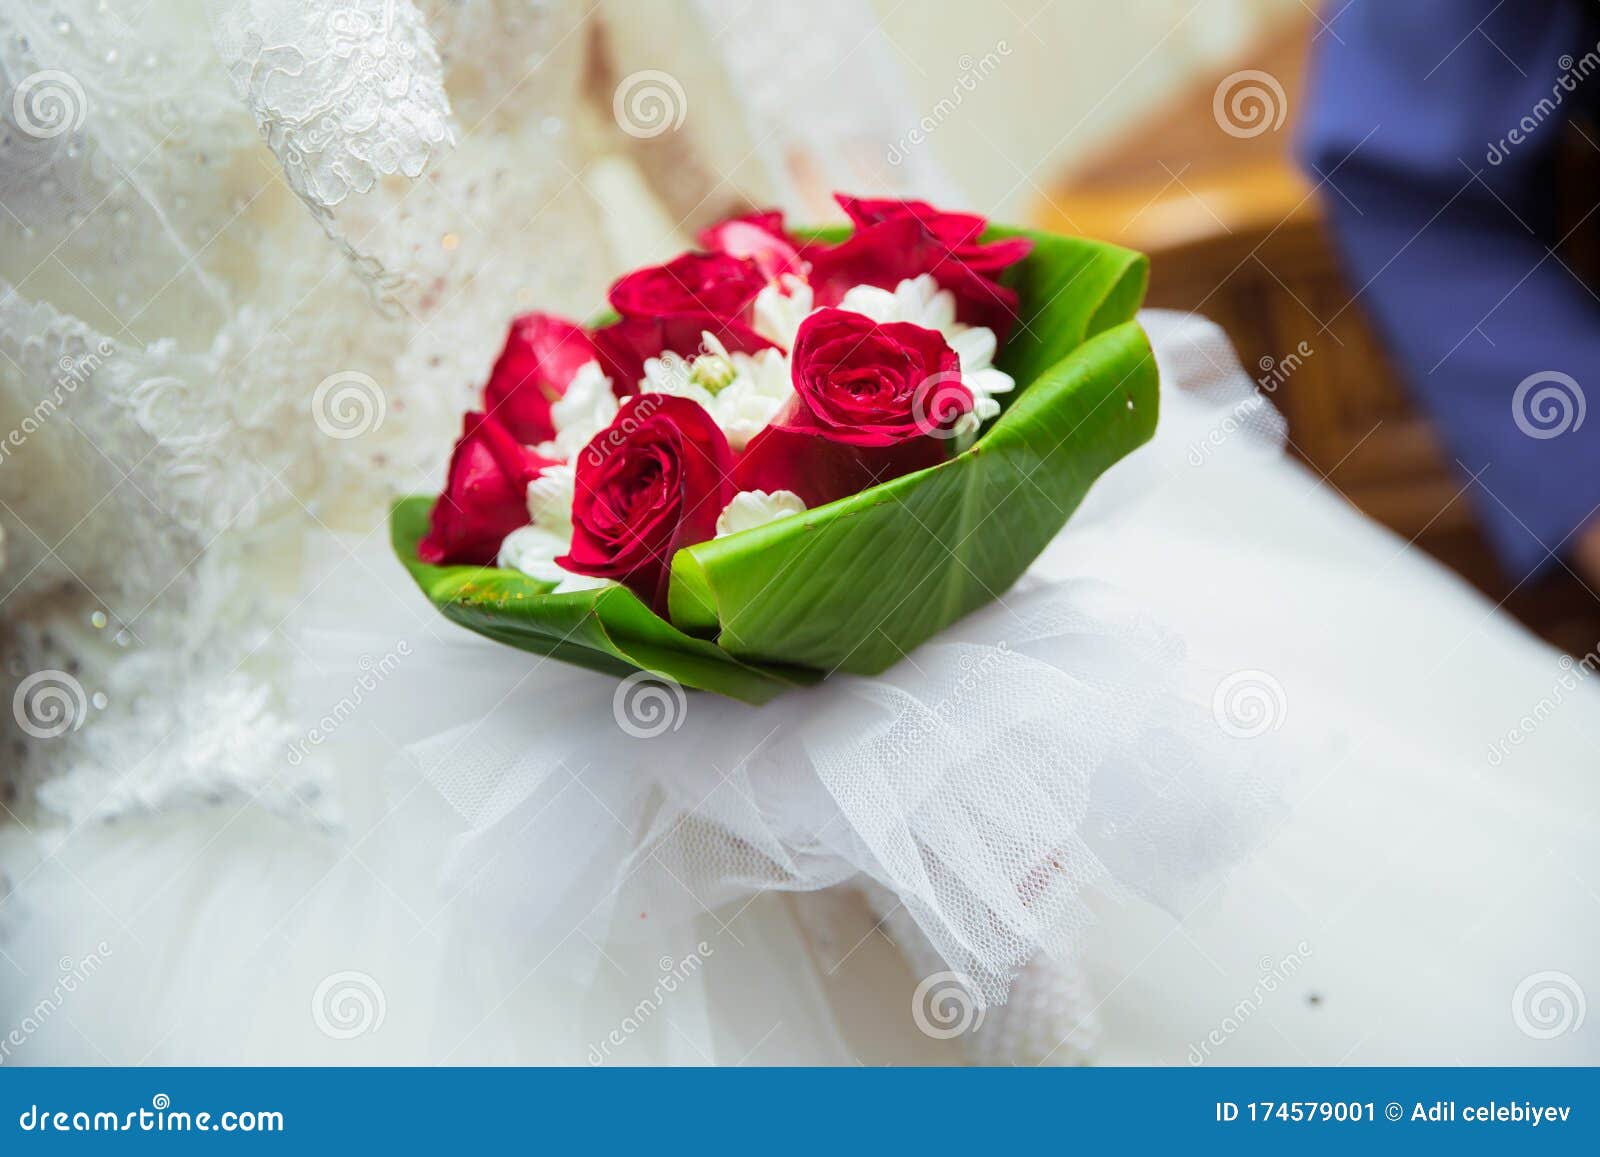 Bouquet De Rosas Vermelhas Nas Mãos Da Noiva . Escada De Mãos De Noiva  Segurando Belo Buquê De Casamento De Rosas Vermelhas. Imagem de Stock -  Imagem de bonito, encantador: 174579001